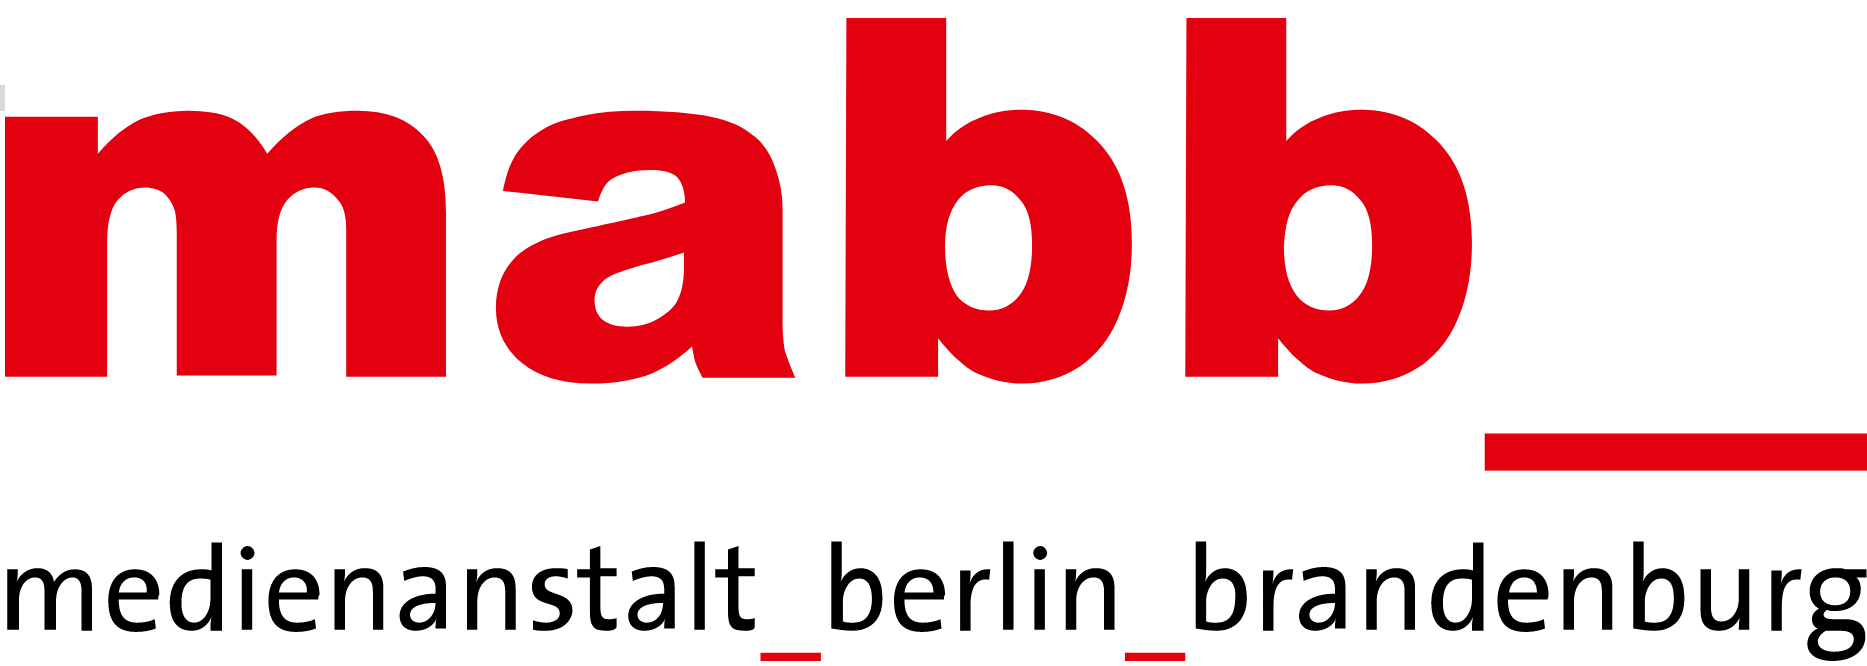 logo der Medienanstalt Berlin-Brandenburg; "mabb" in roten Buchstaben, darunter der Schriftzug "mediennstalt_berlin_brandenburg" in schwarzer Schrift, weißer Hintergrund